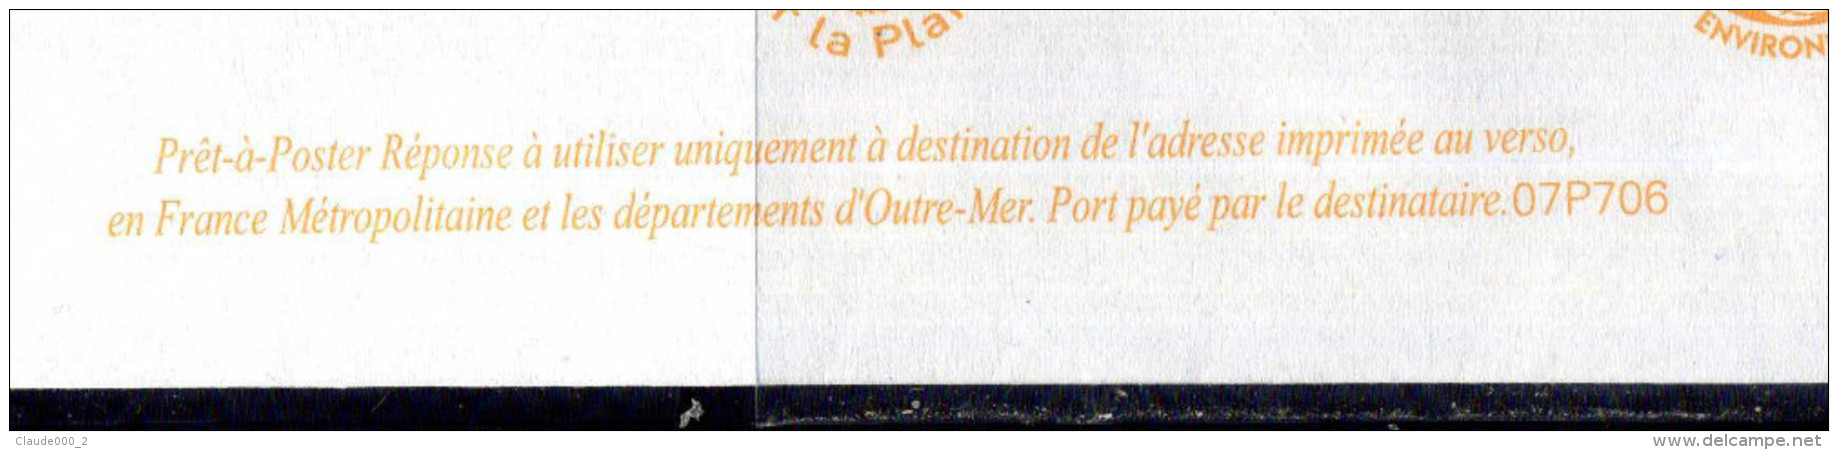 PAP Lamouche " FONDATION DE FRANCE " Port Payé Par 07P706 NEUF ** - Prêts-à-poster:Answer/Lamouche